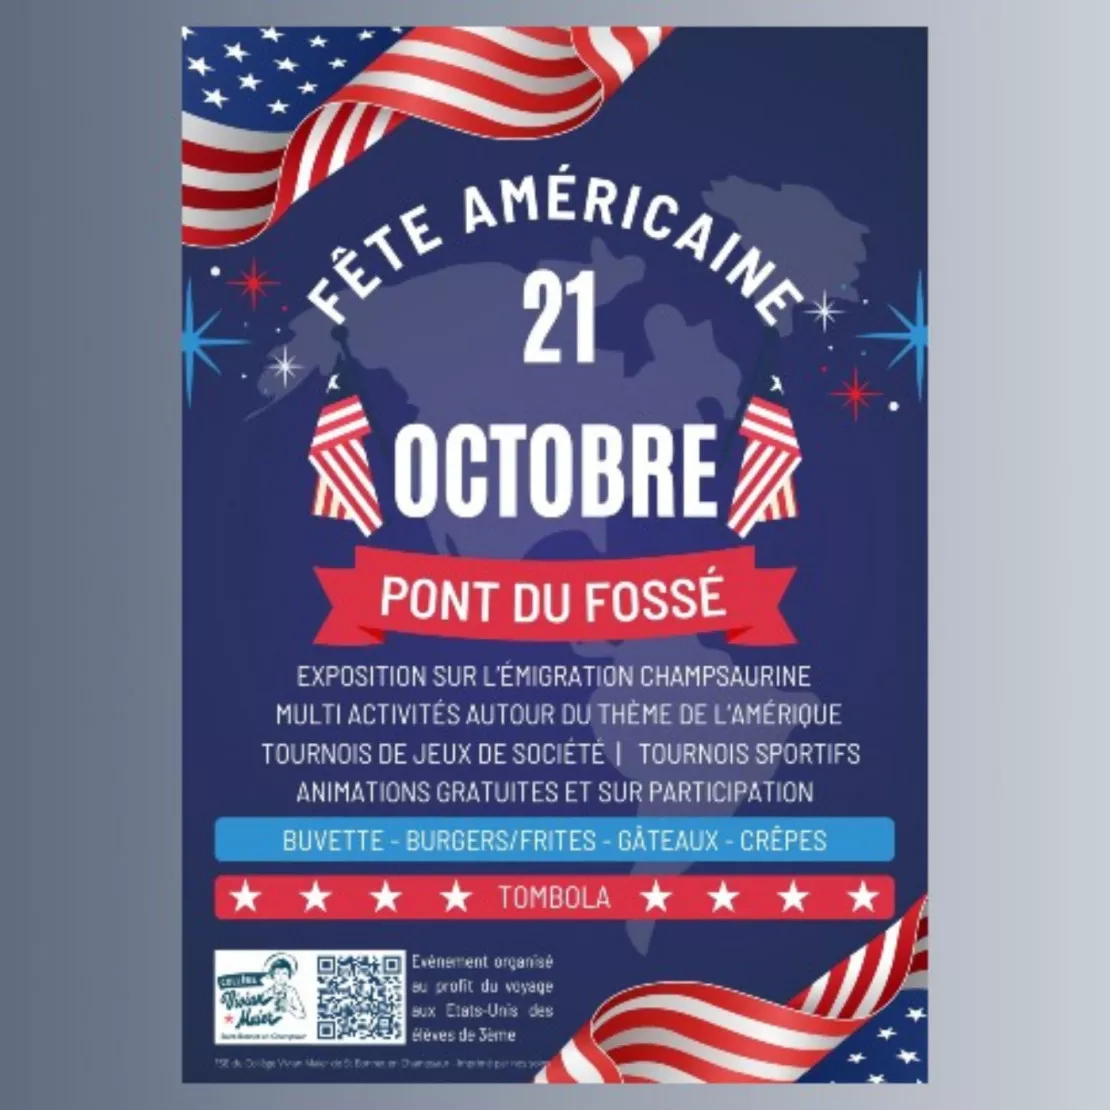 Fête Américaine à Saint Jean Saint Nicolas, samedi 21 octobre.